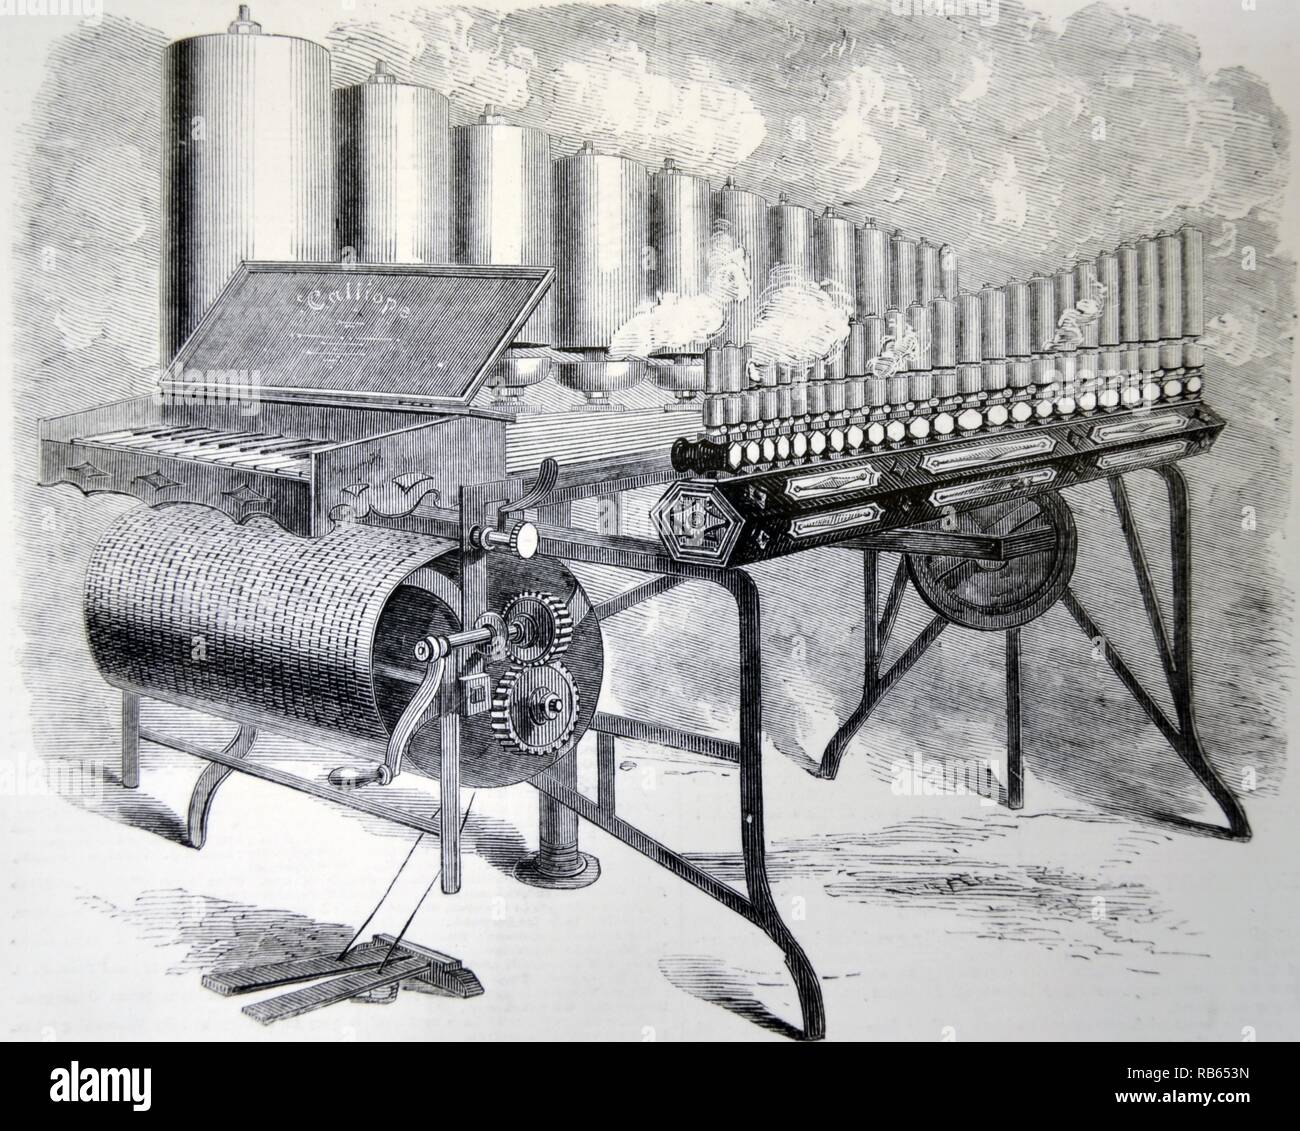 Arthur S. Denny's, l'orgue à vapeur Calliope, exposées dans le transept principal du Crystal Palace, Londres. Dans ''l'Illustrated London News'', Londres, 1859. Banque D'Images